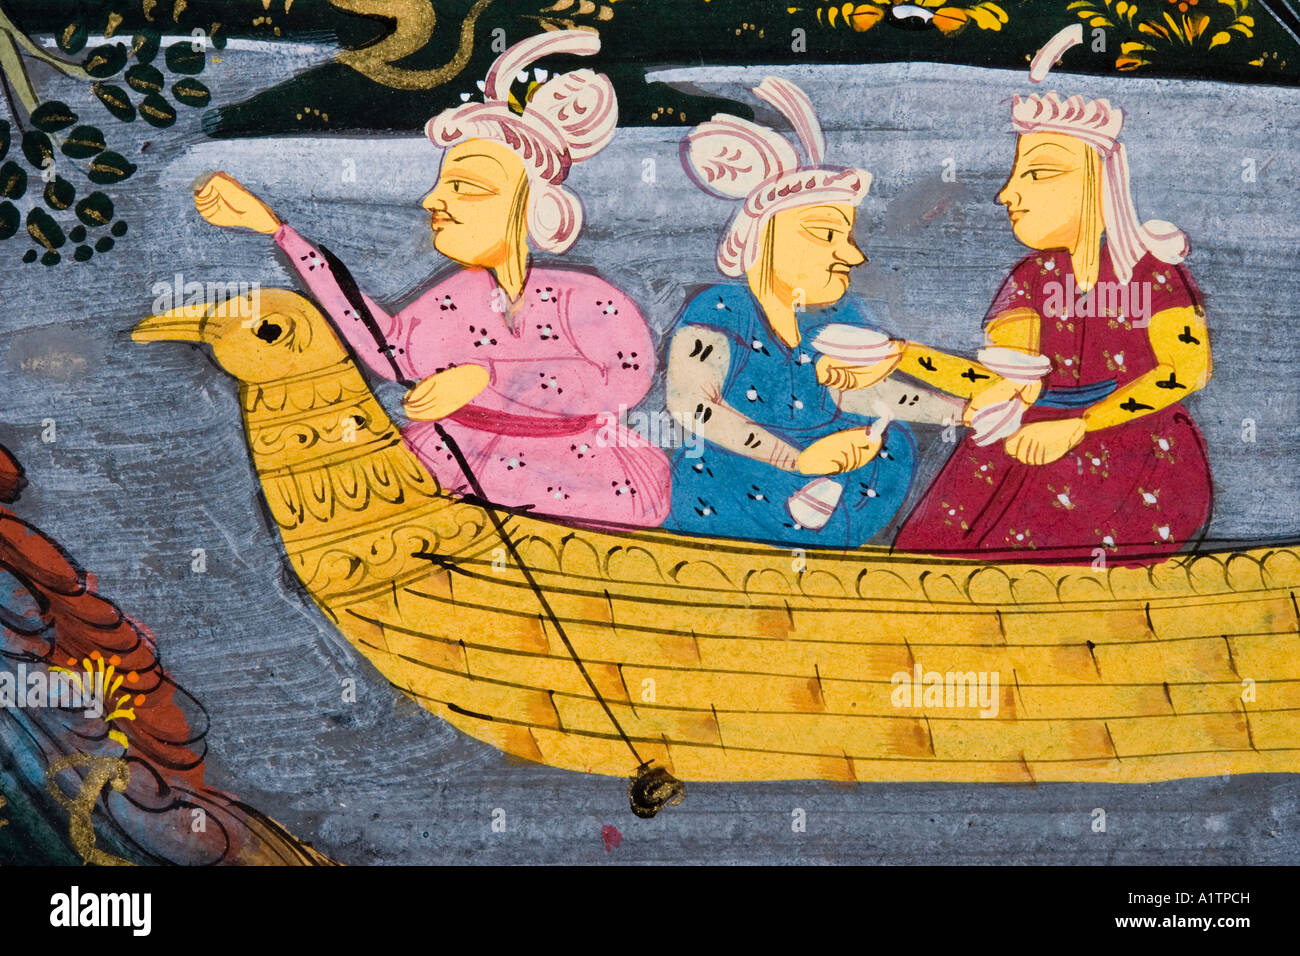 Détail d'une peinture du XVIIe siècle. Manuscrit persan. Hommes et femmes dans un bateau sur une rivière ou un lac. Homme pêchant du bateau. Banque D'Images